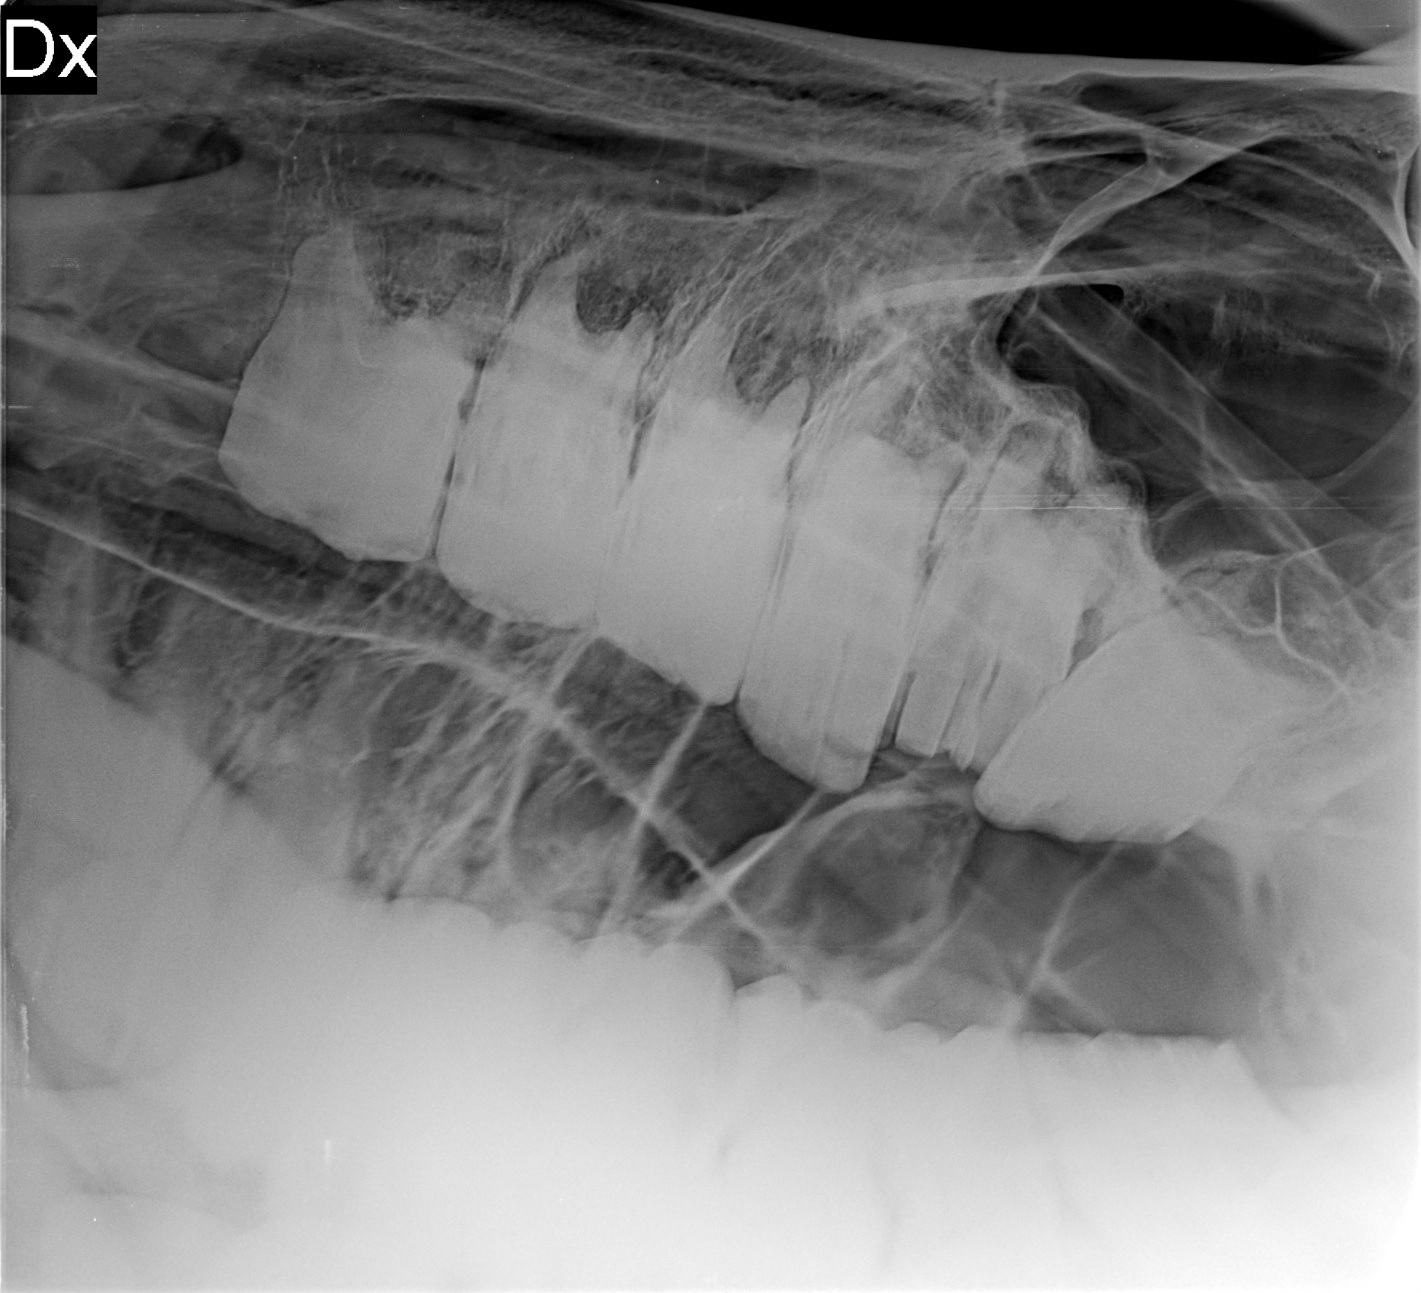 Stolička před extrakcí (druhý zub zprava)